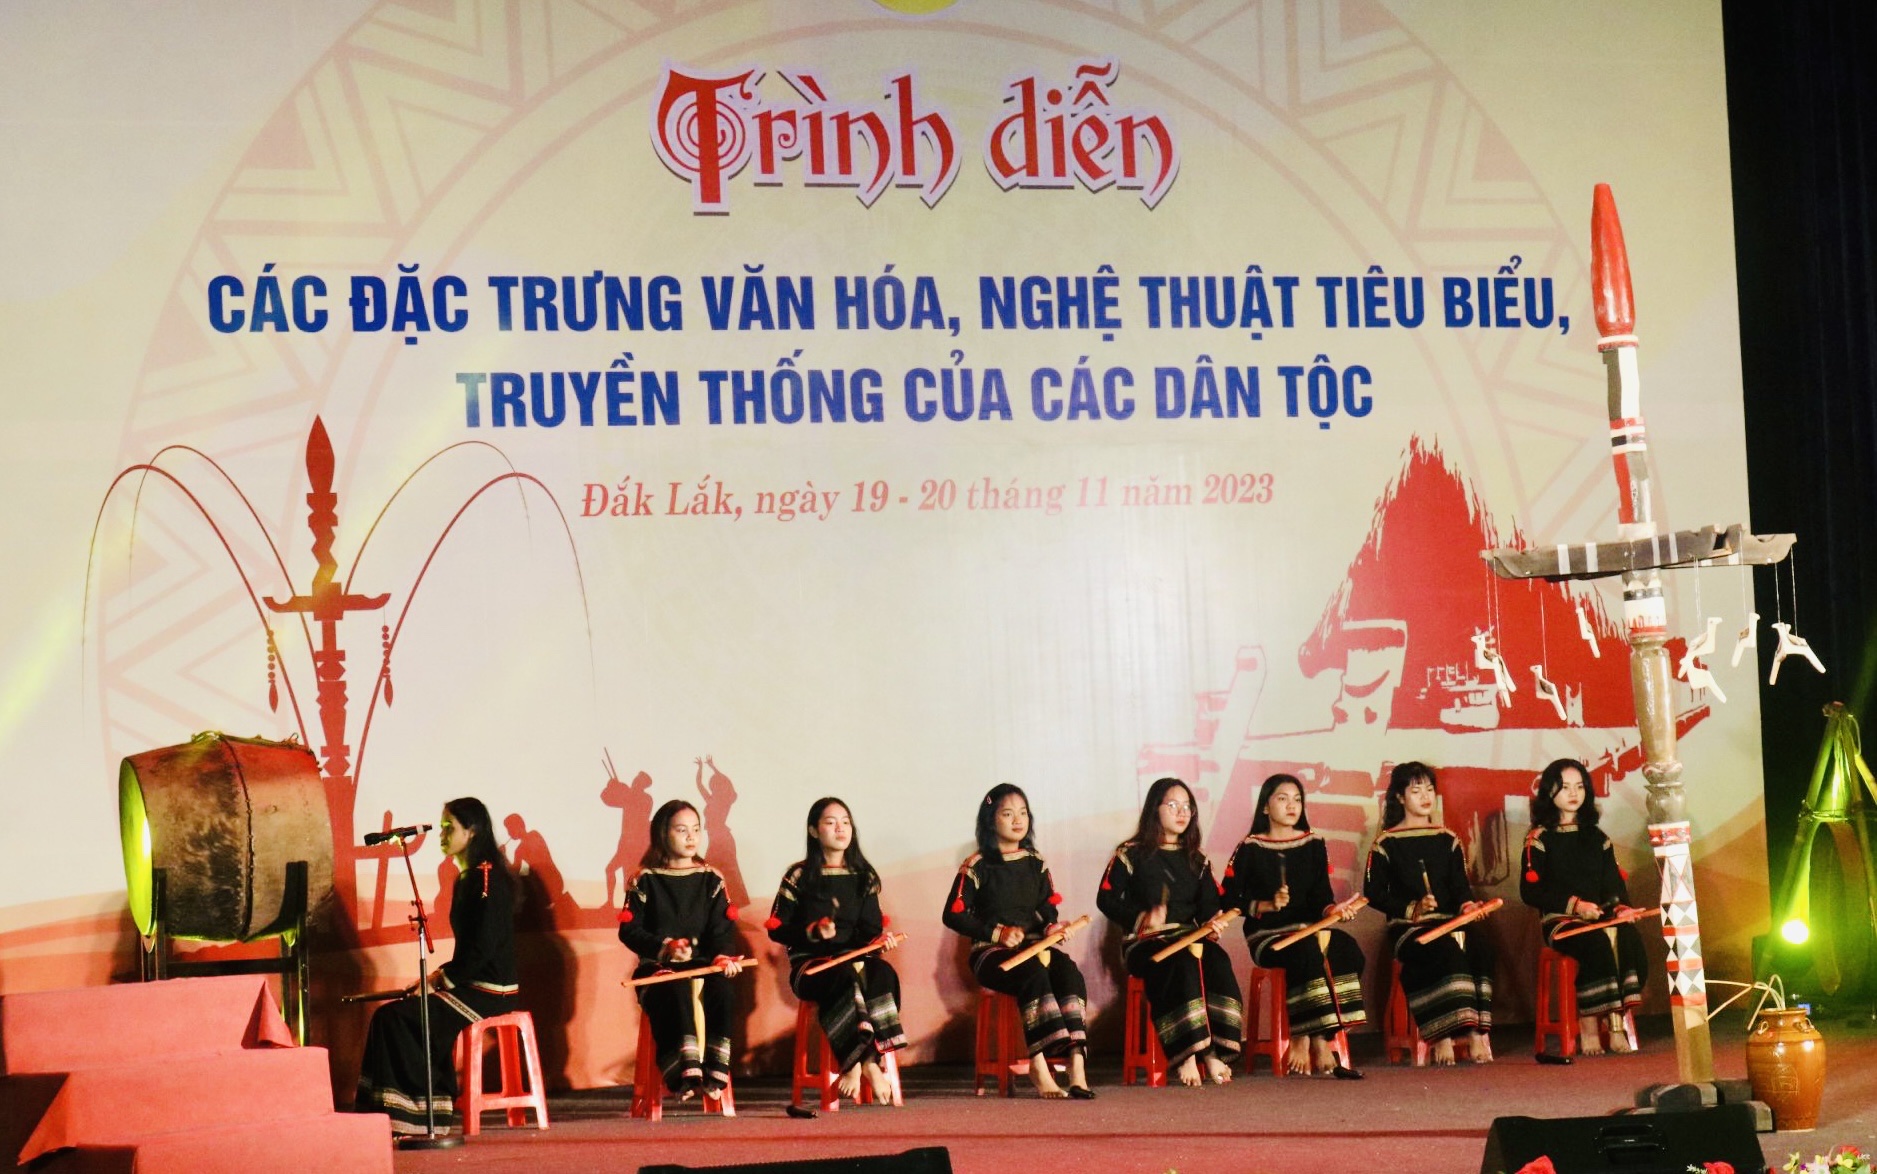 Trình diễn các đặc trưng văn hóa, nghệ thuật tiêu biểu truyền thống của các dân tộc tỉnh Đắk Lắk- Ảnh minh họa